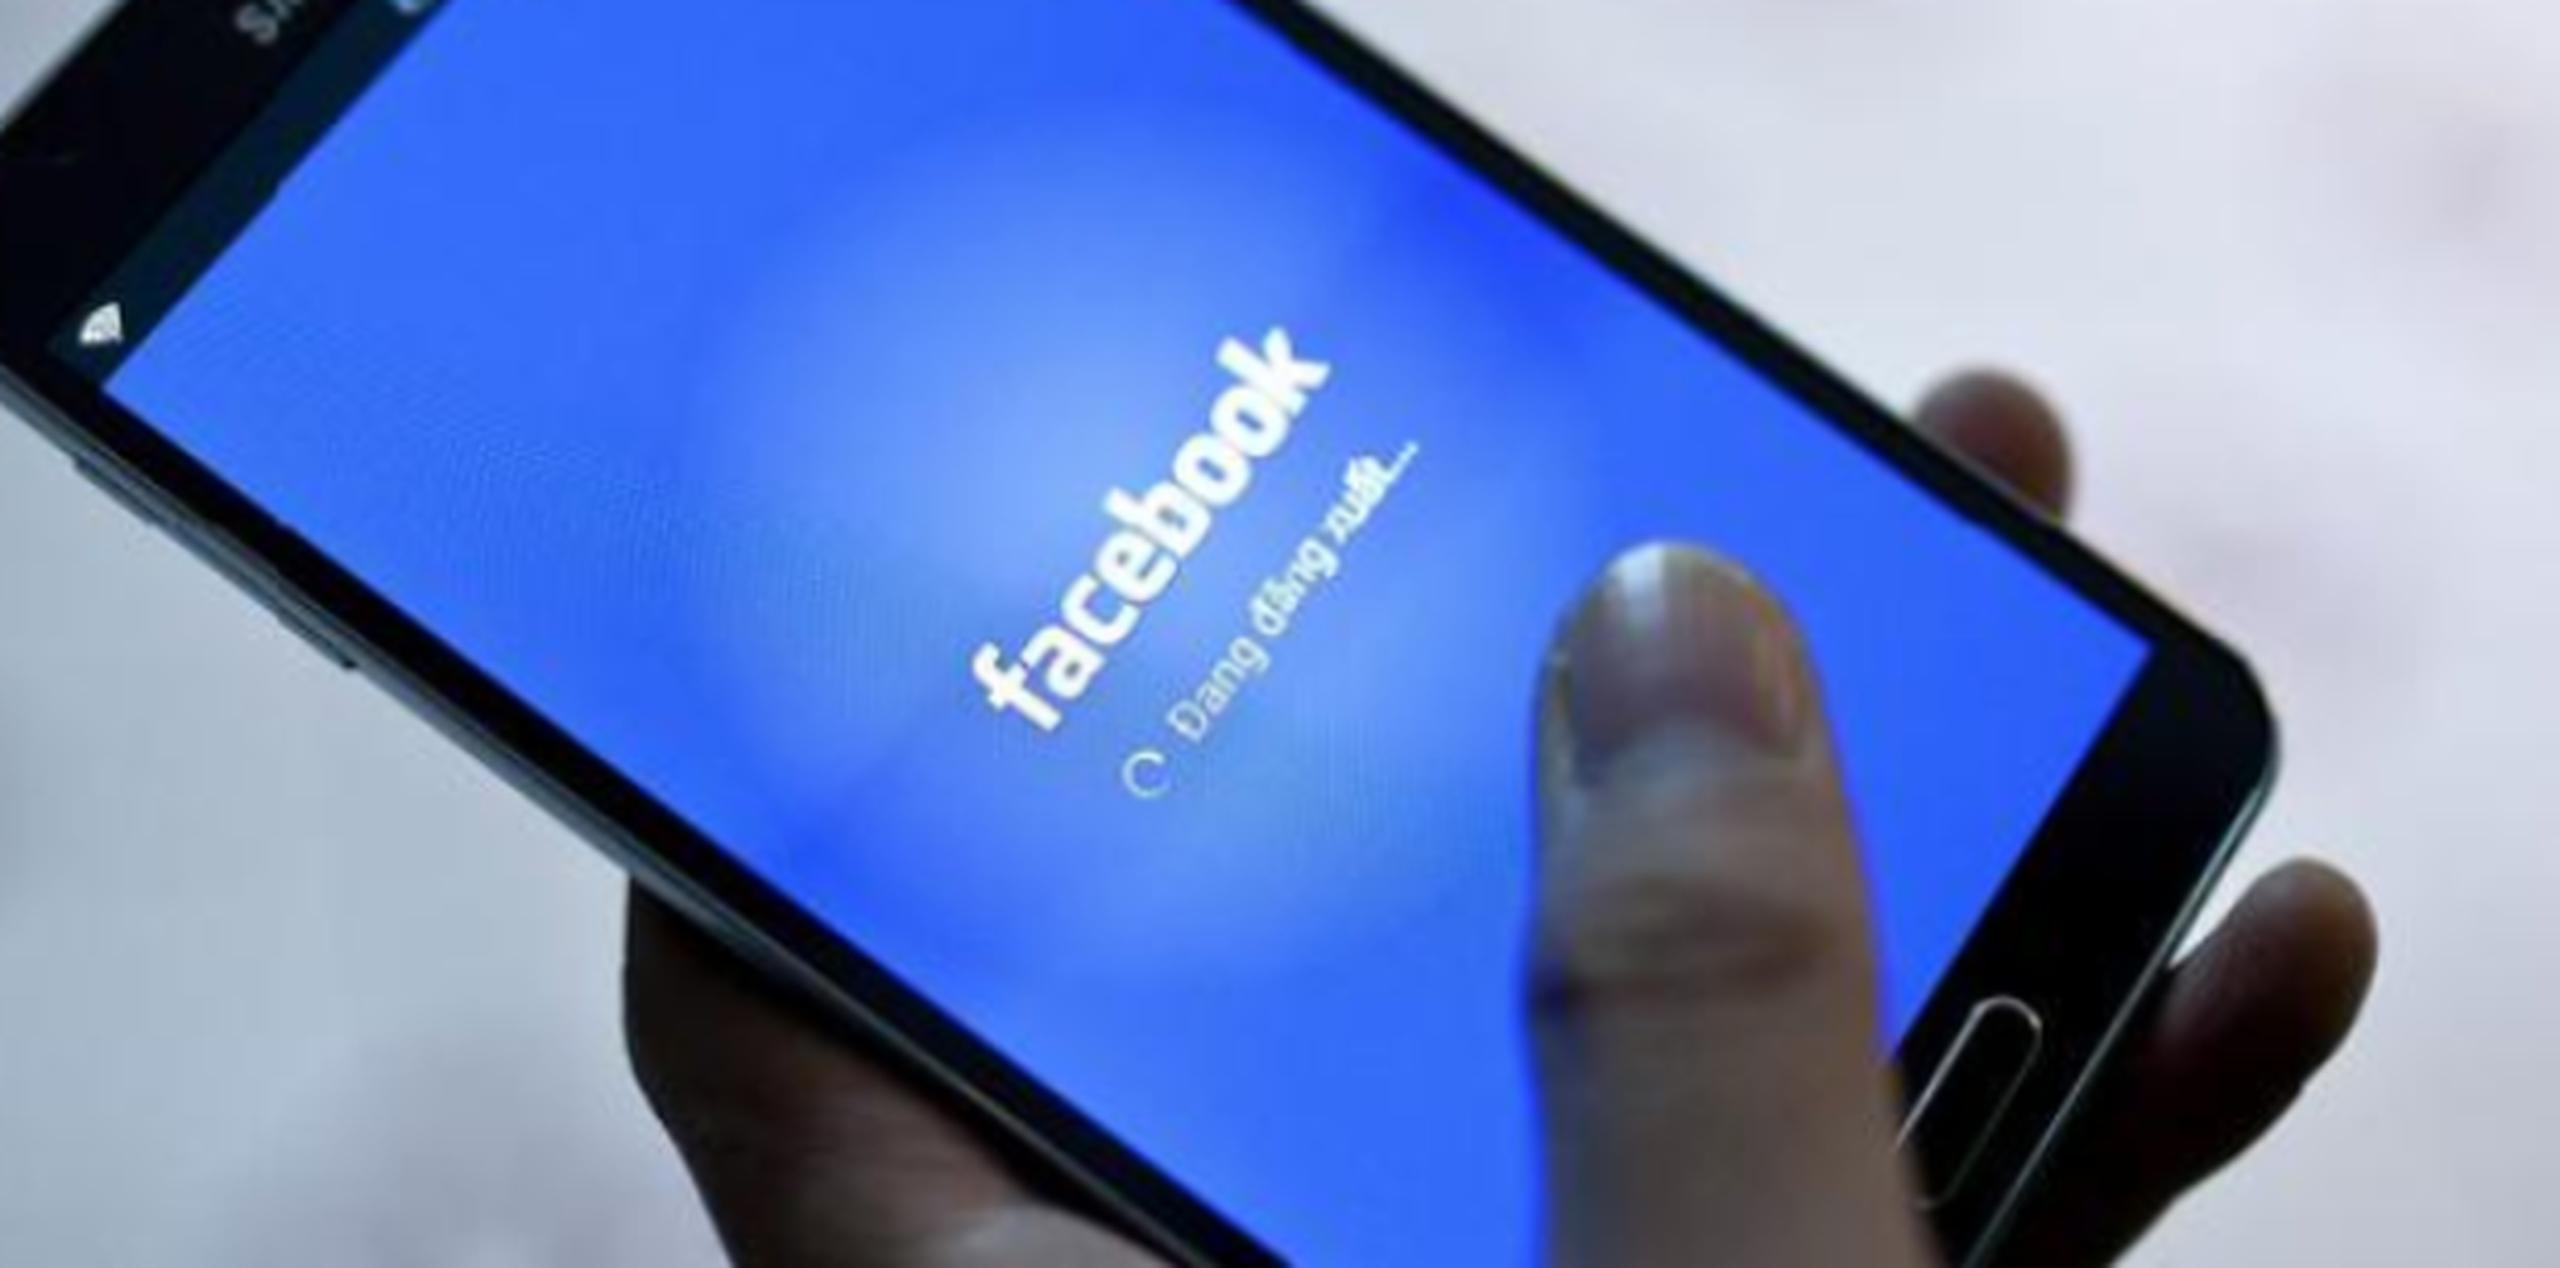 Facebook dijo que unos 4,500 empleados suyos revisan contenidos, y que contratará a otros 3,000 en el año próximo.  (Archivo)

